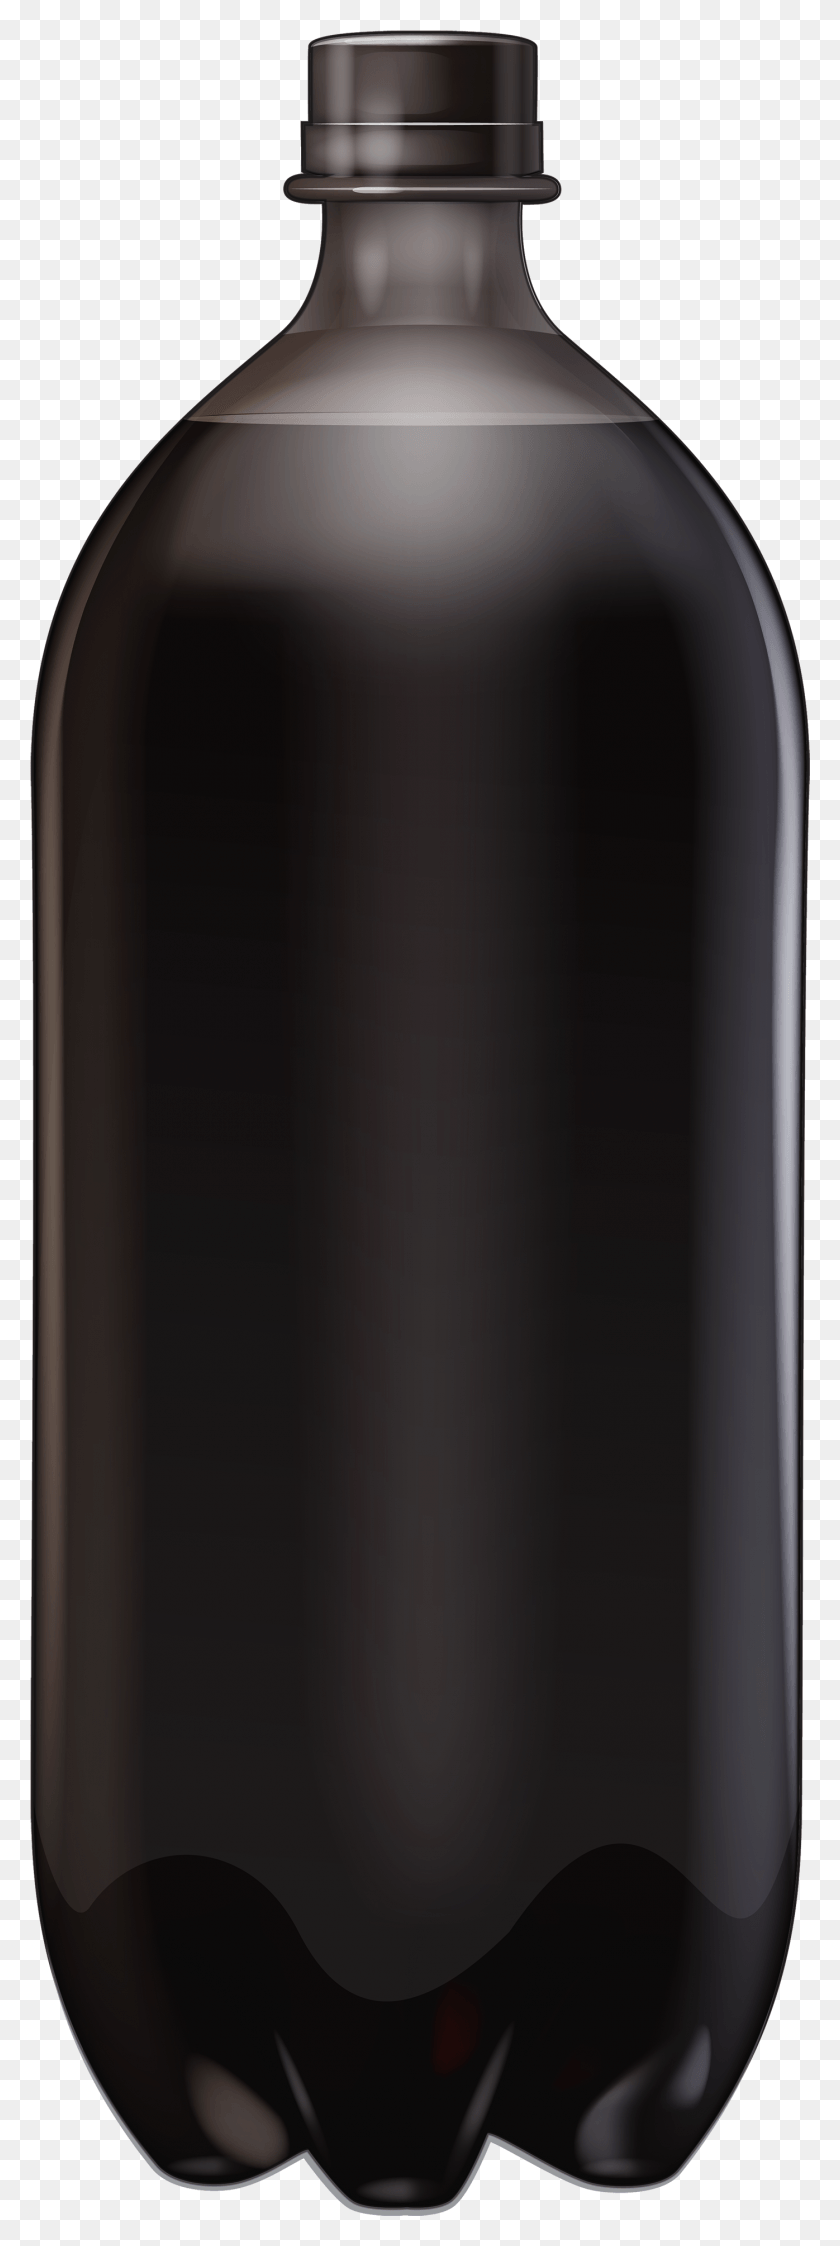 1396x3913 Large Black Bottle Clipart Smartphone, Alcohol, Beverage, Drink HD PNG Download